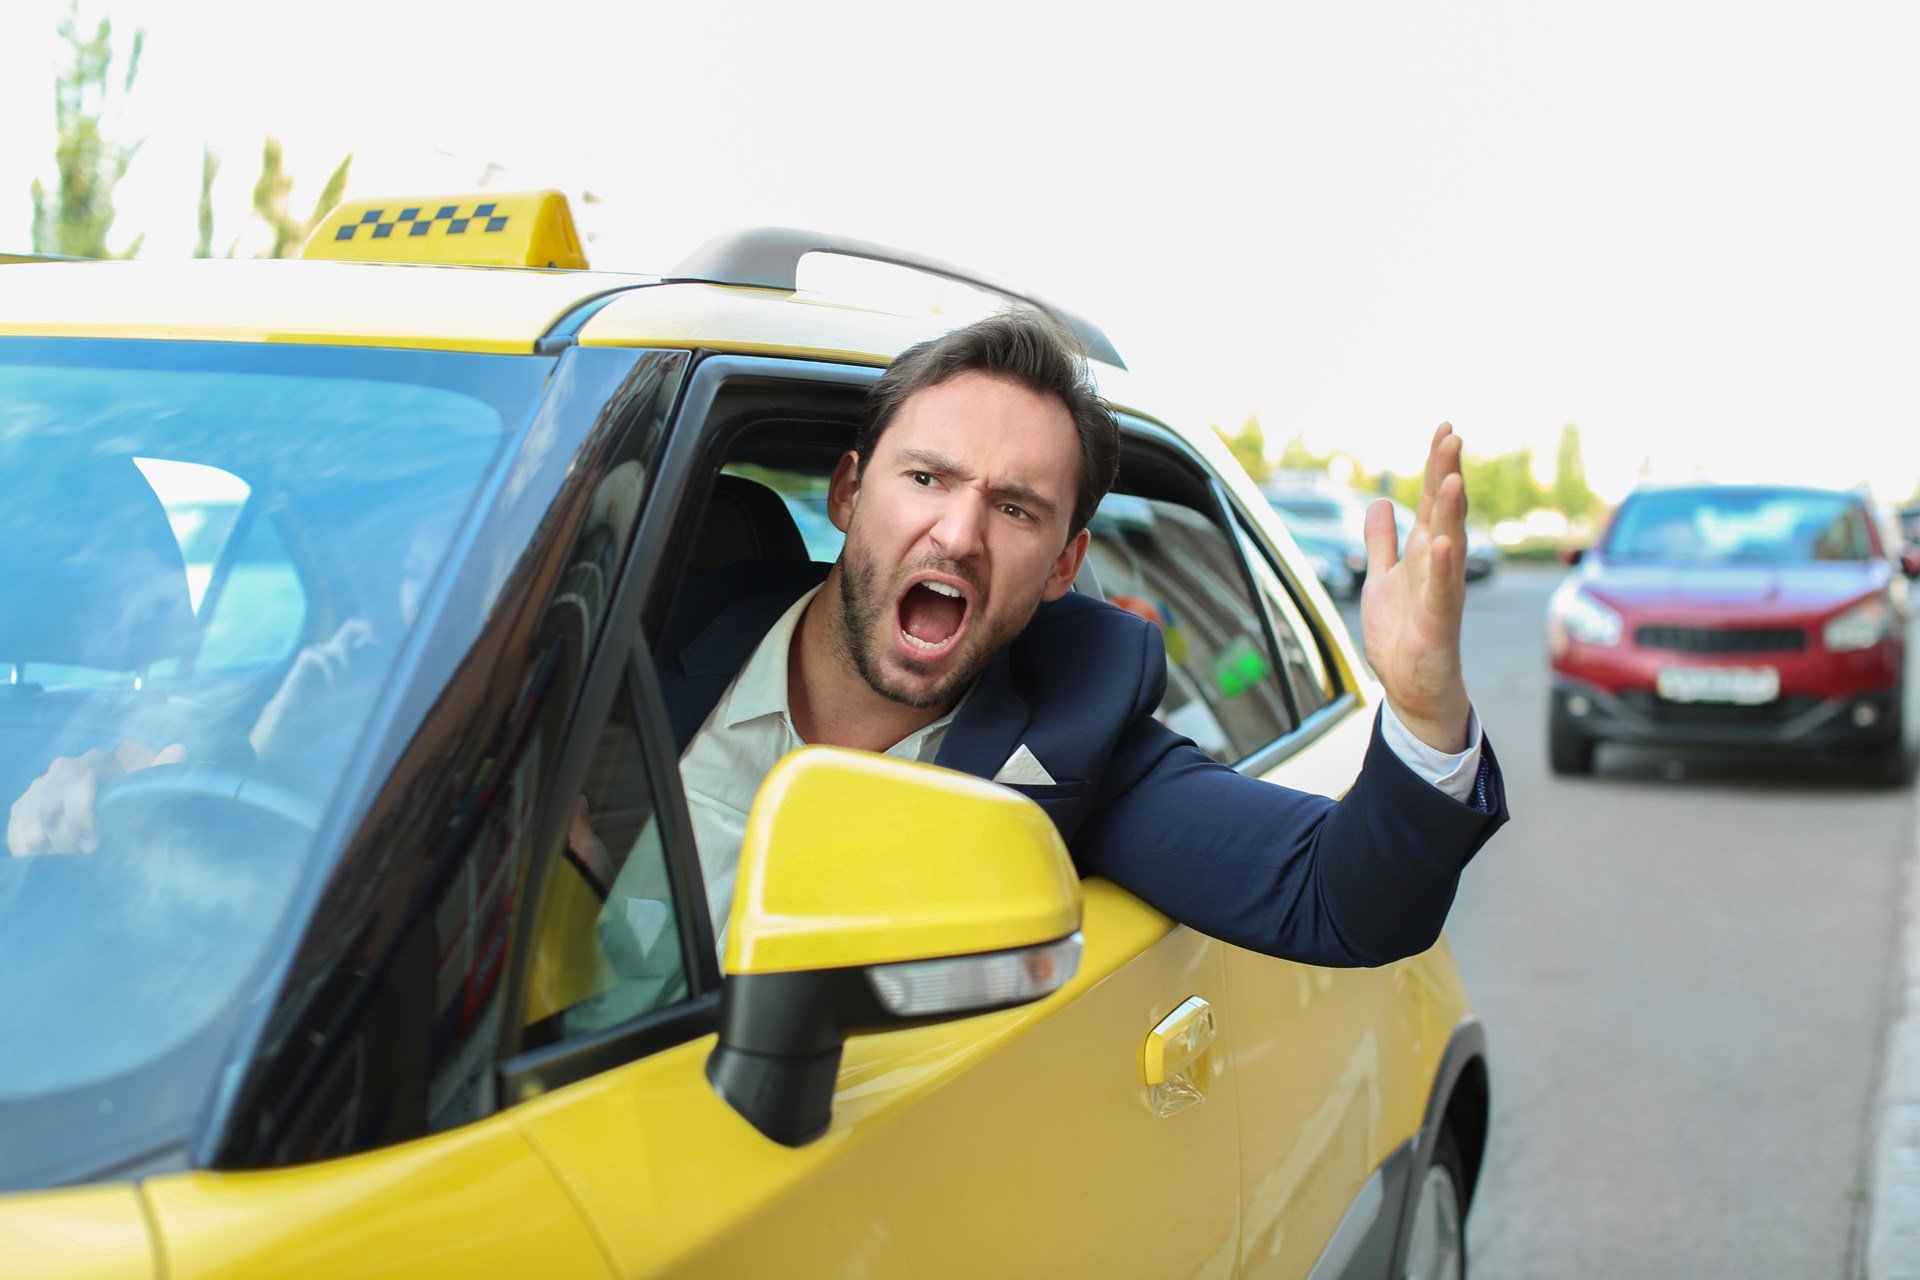 Услуги такси подорожают от вытеснения из отрасли водителей с плохой репутацией?